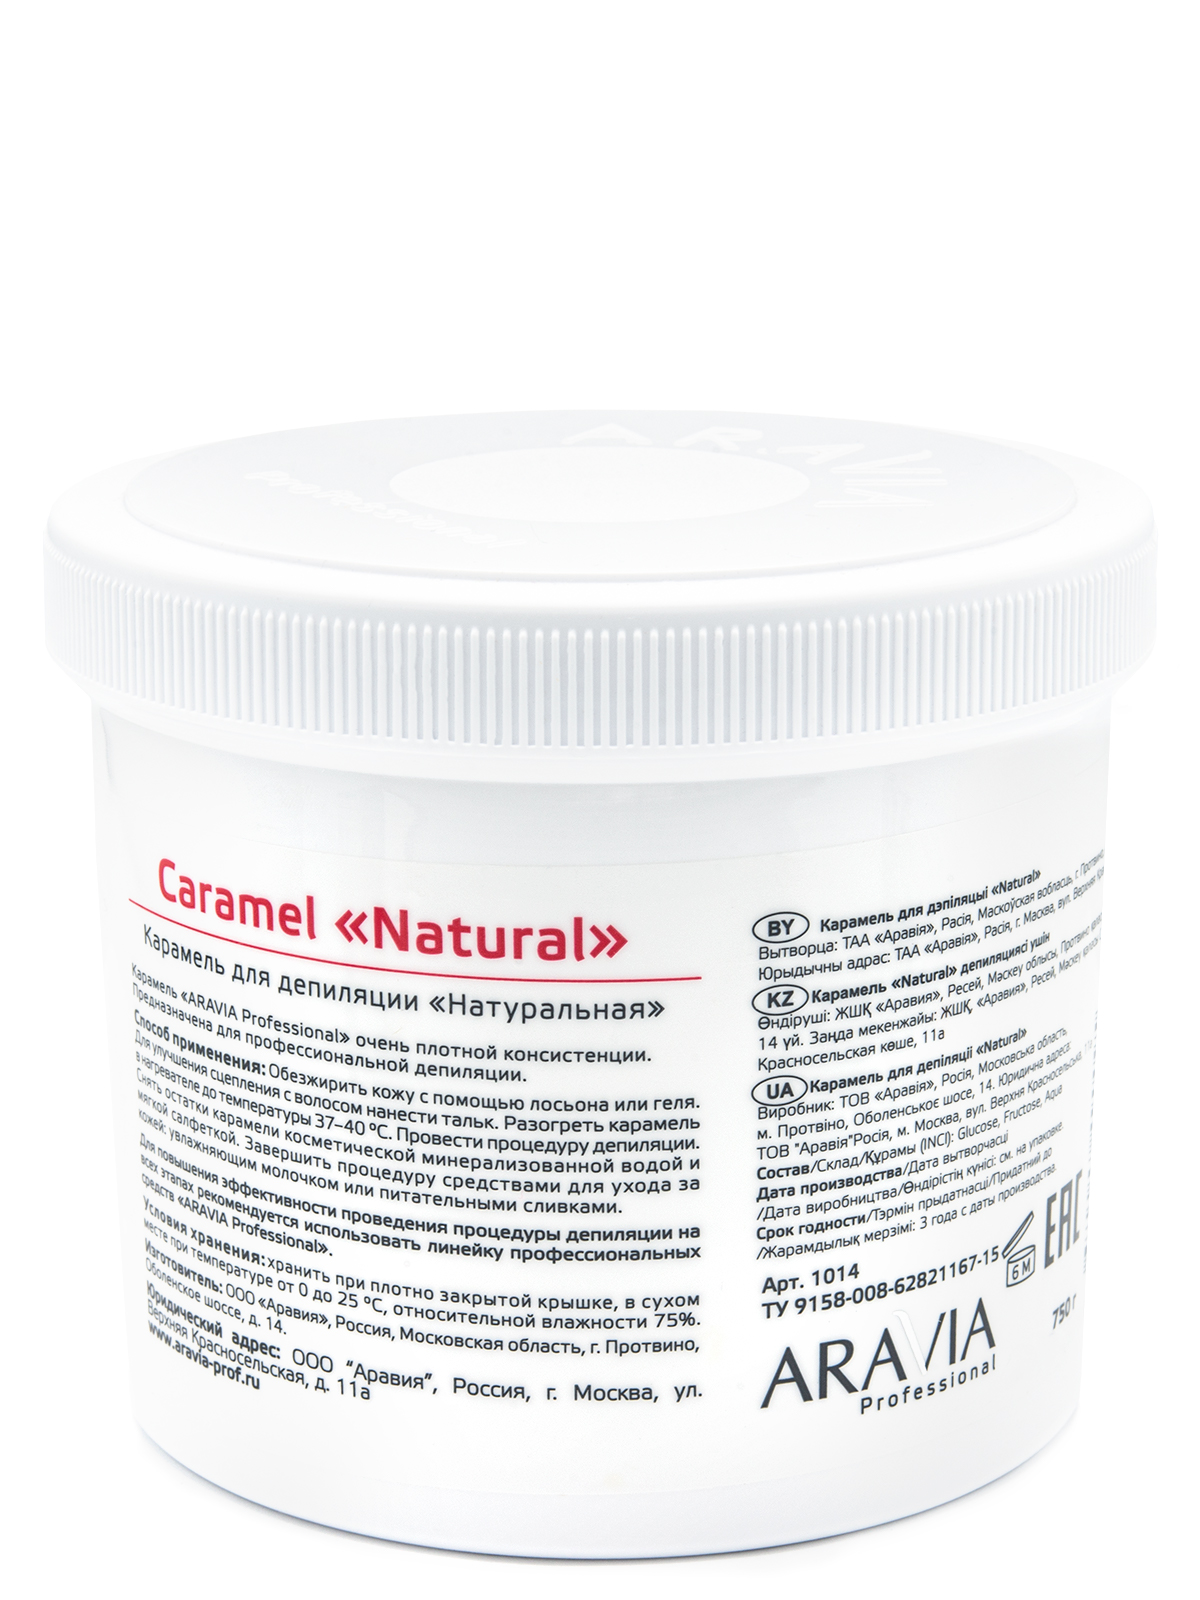 ARAVIA Professional Карамель для депиляции Натуральная очень плотной консистенции, 750 г.